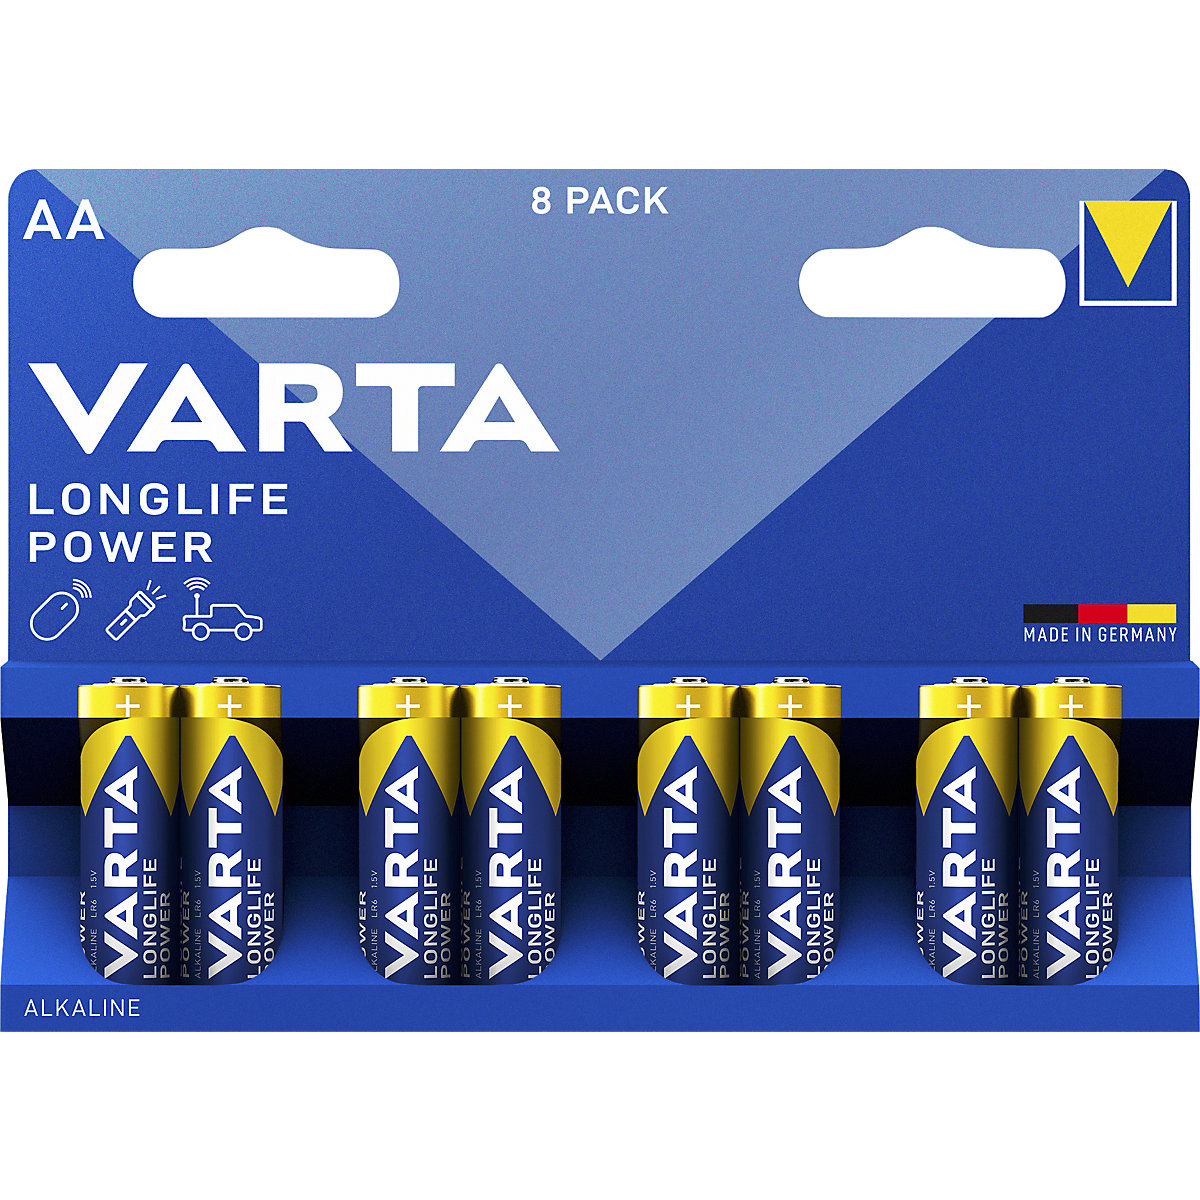 Batería LONGLIFE Power – VARTA